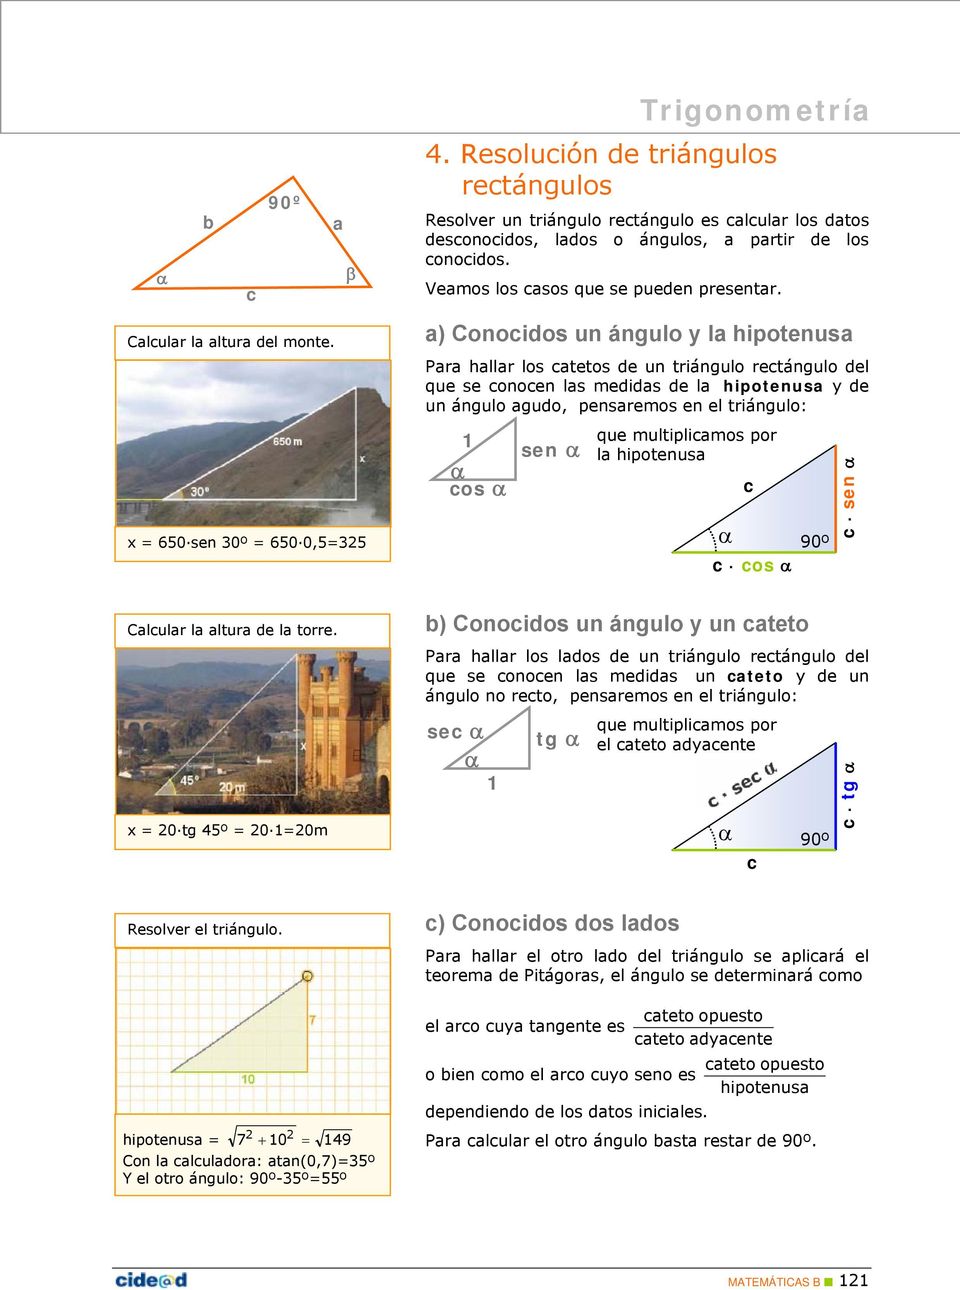 x 0 tg º 0 0m a) Conocidos un ángulo y la hipotenusa Para hallar los catetos de un triángulo rectángulo del que se conocen las medidas de la hipotenusa y de un ángulo agudo, pensaremos en el